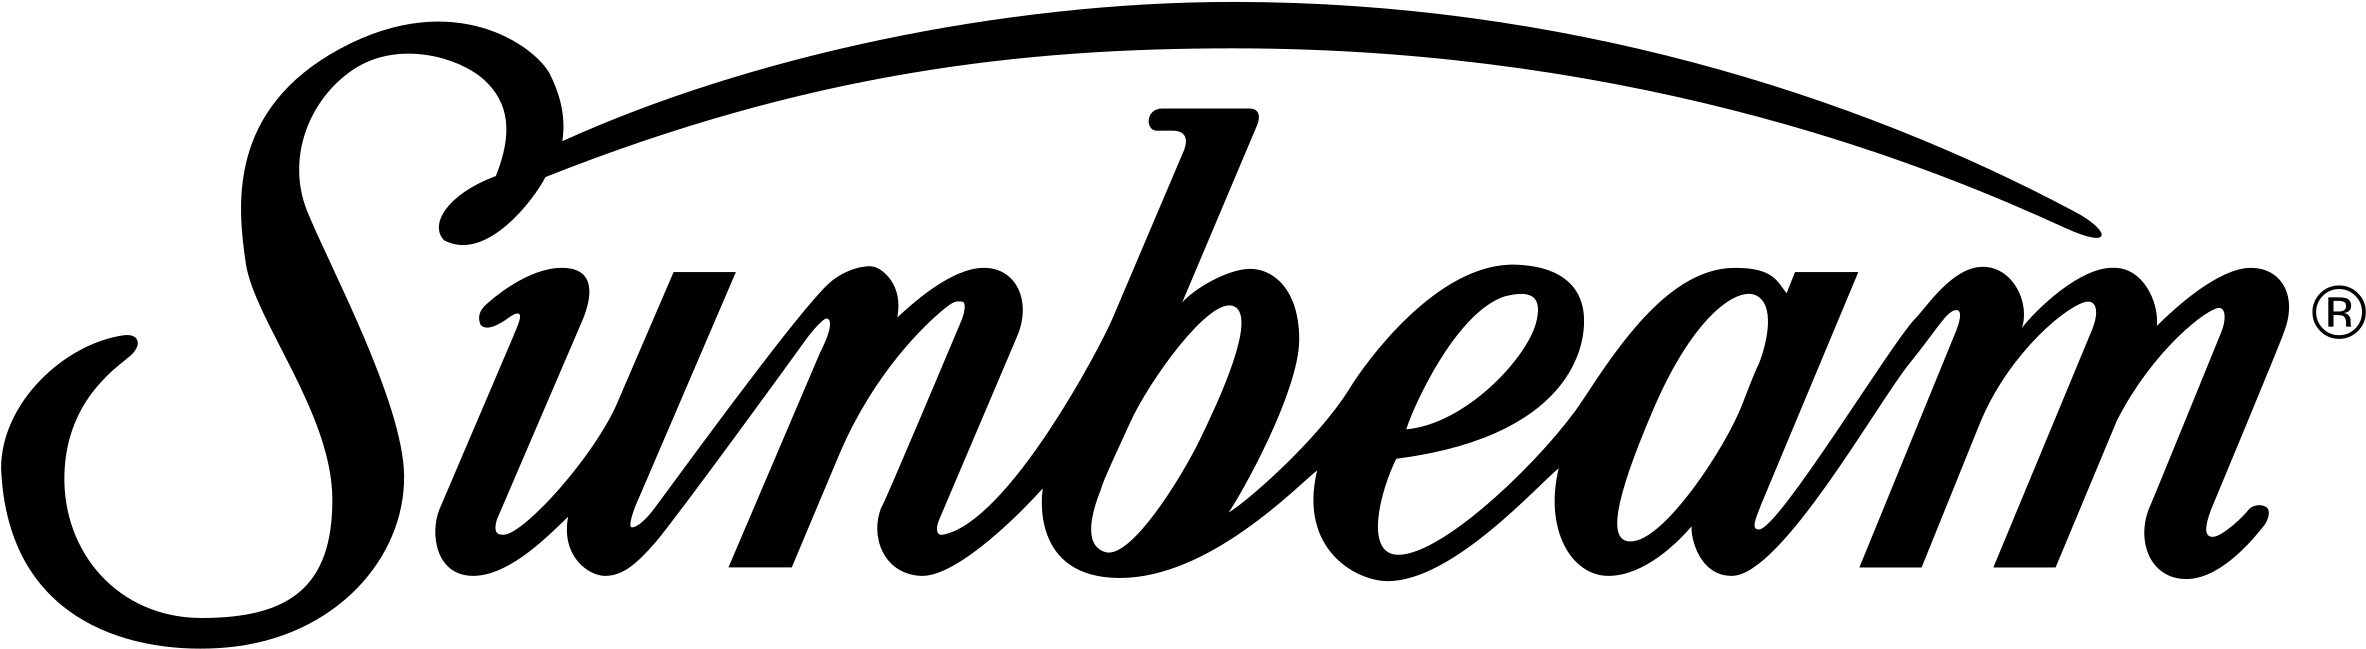 Sunbeam Logo Black And White - Sunbeam Model Em-3 Booklet (2400x2400)